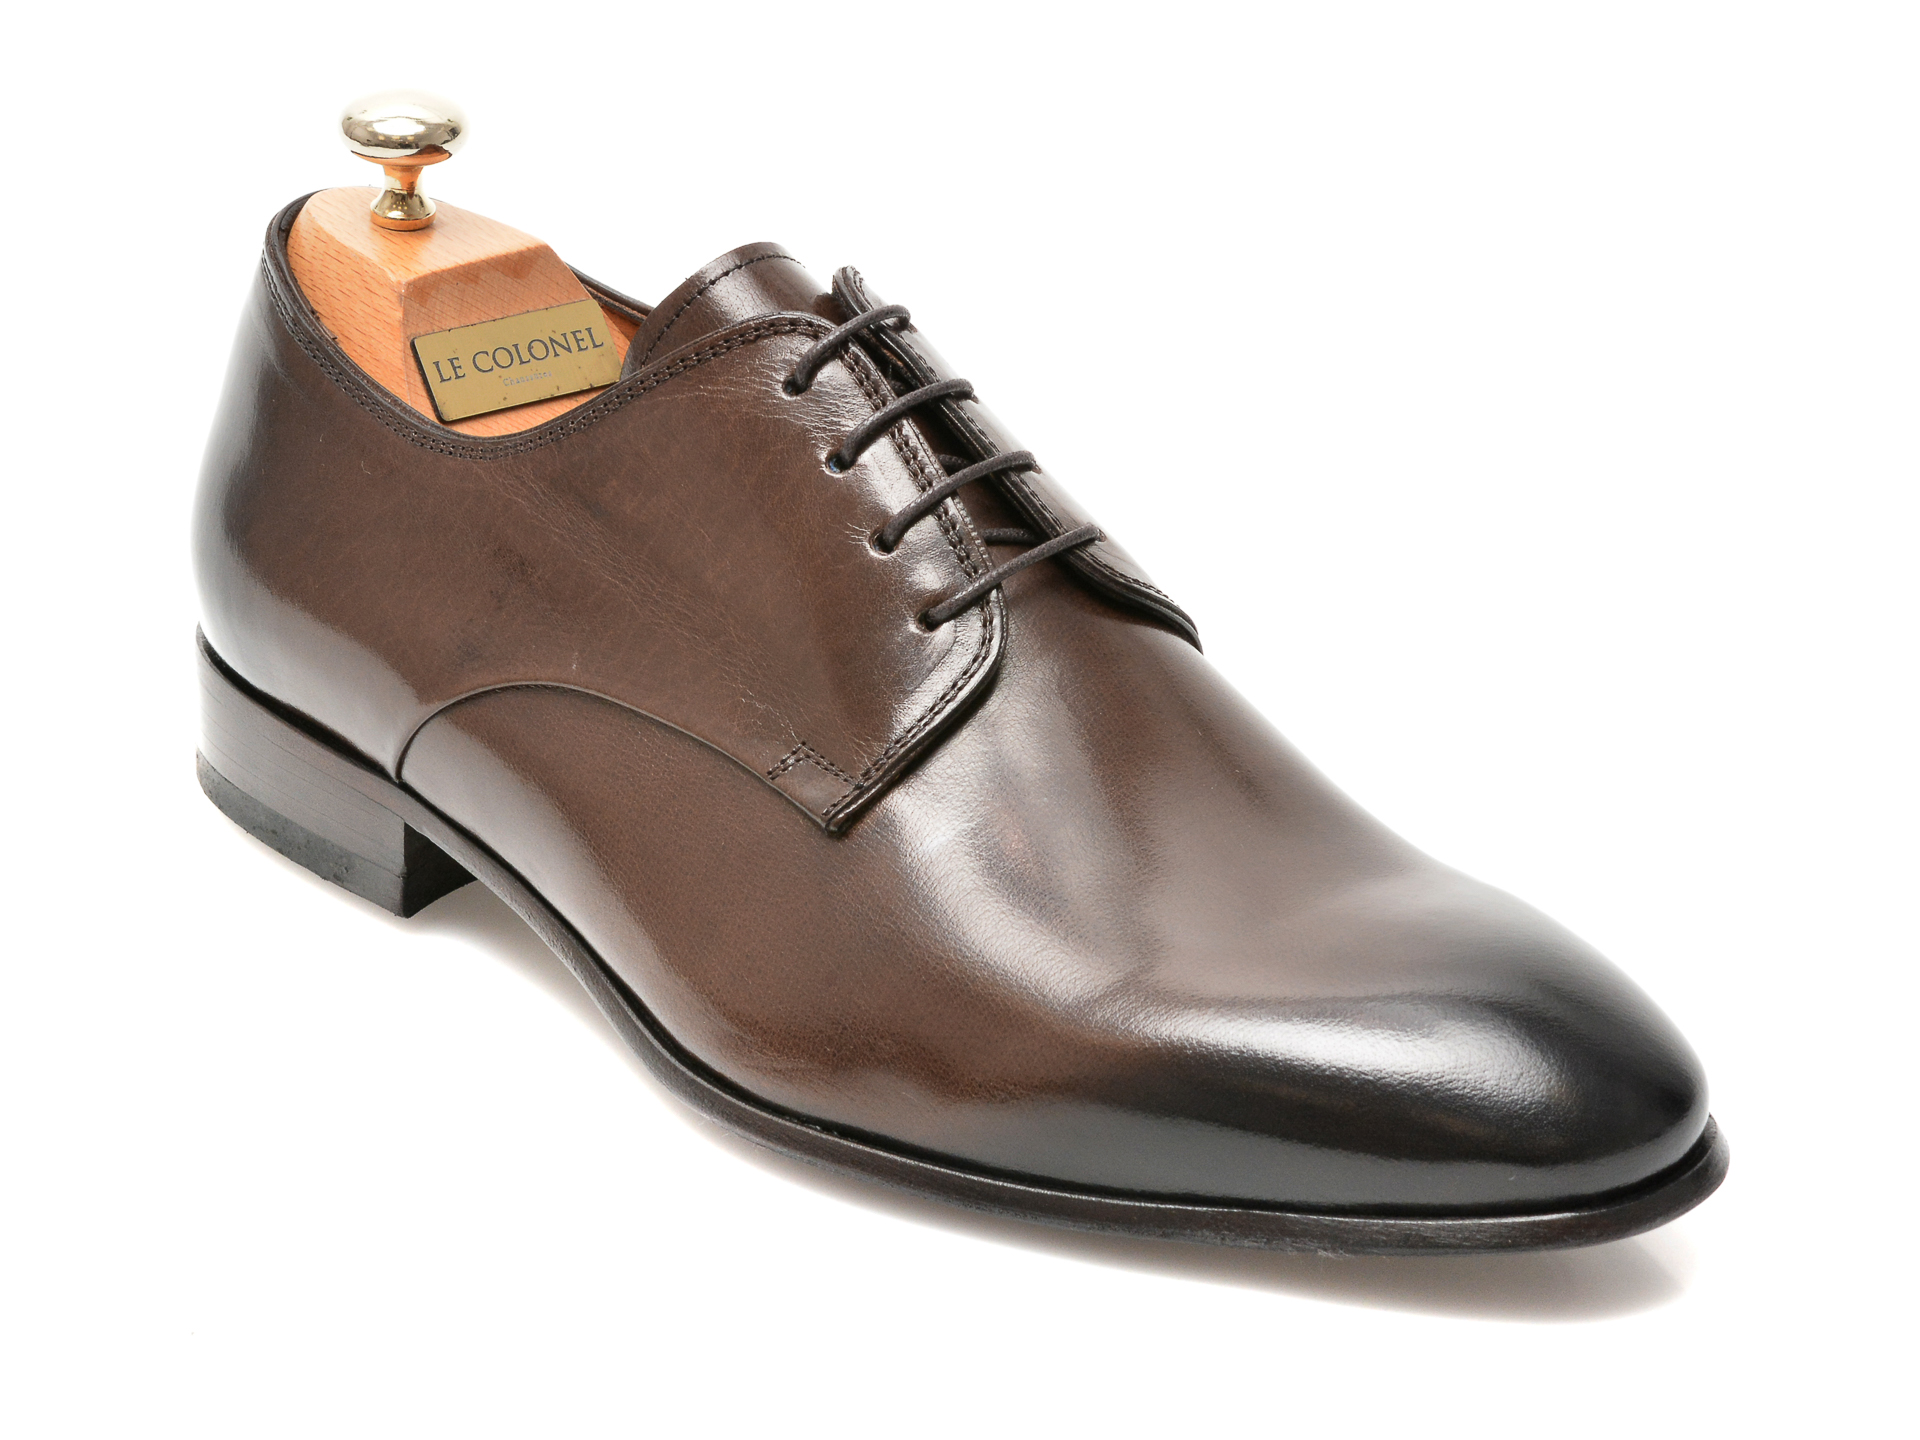 Pantofi LE COLONEL maro, 49817, din piele naturala Le Colonel imagine noua